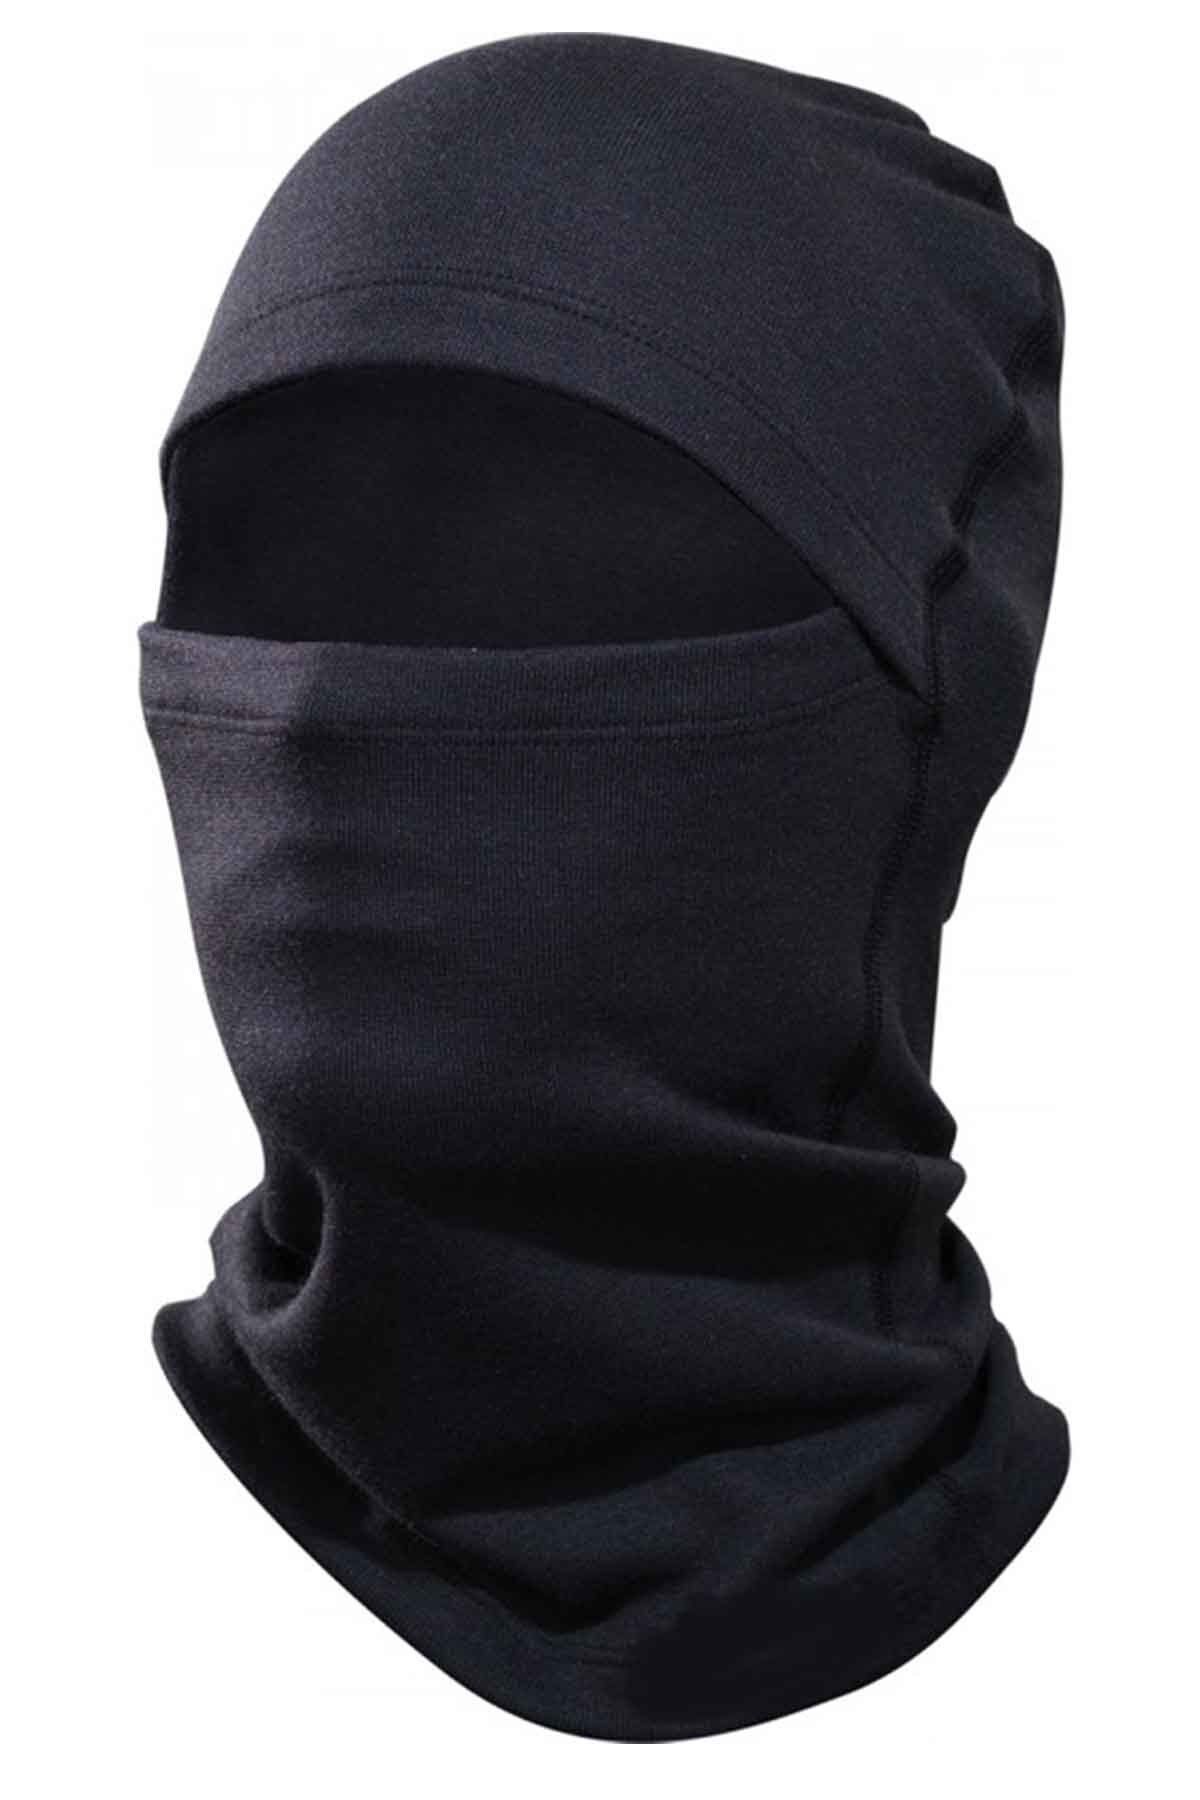 Royaleks Termal Siyah Kar Maskesi Fonksiyonel Kışlık Sıcak Tutan Maske